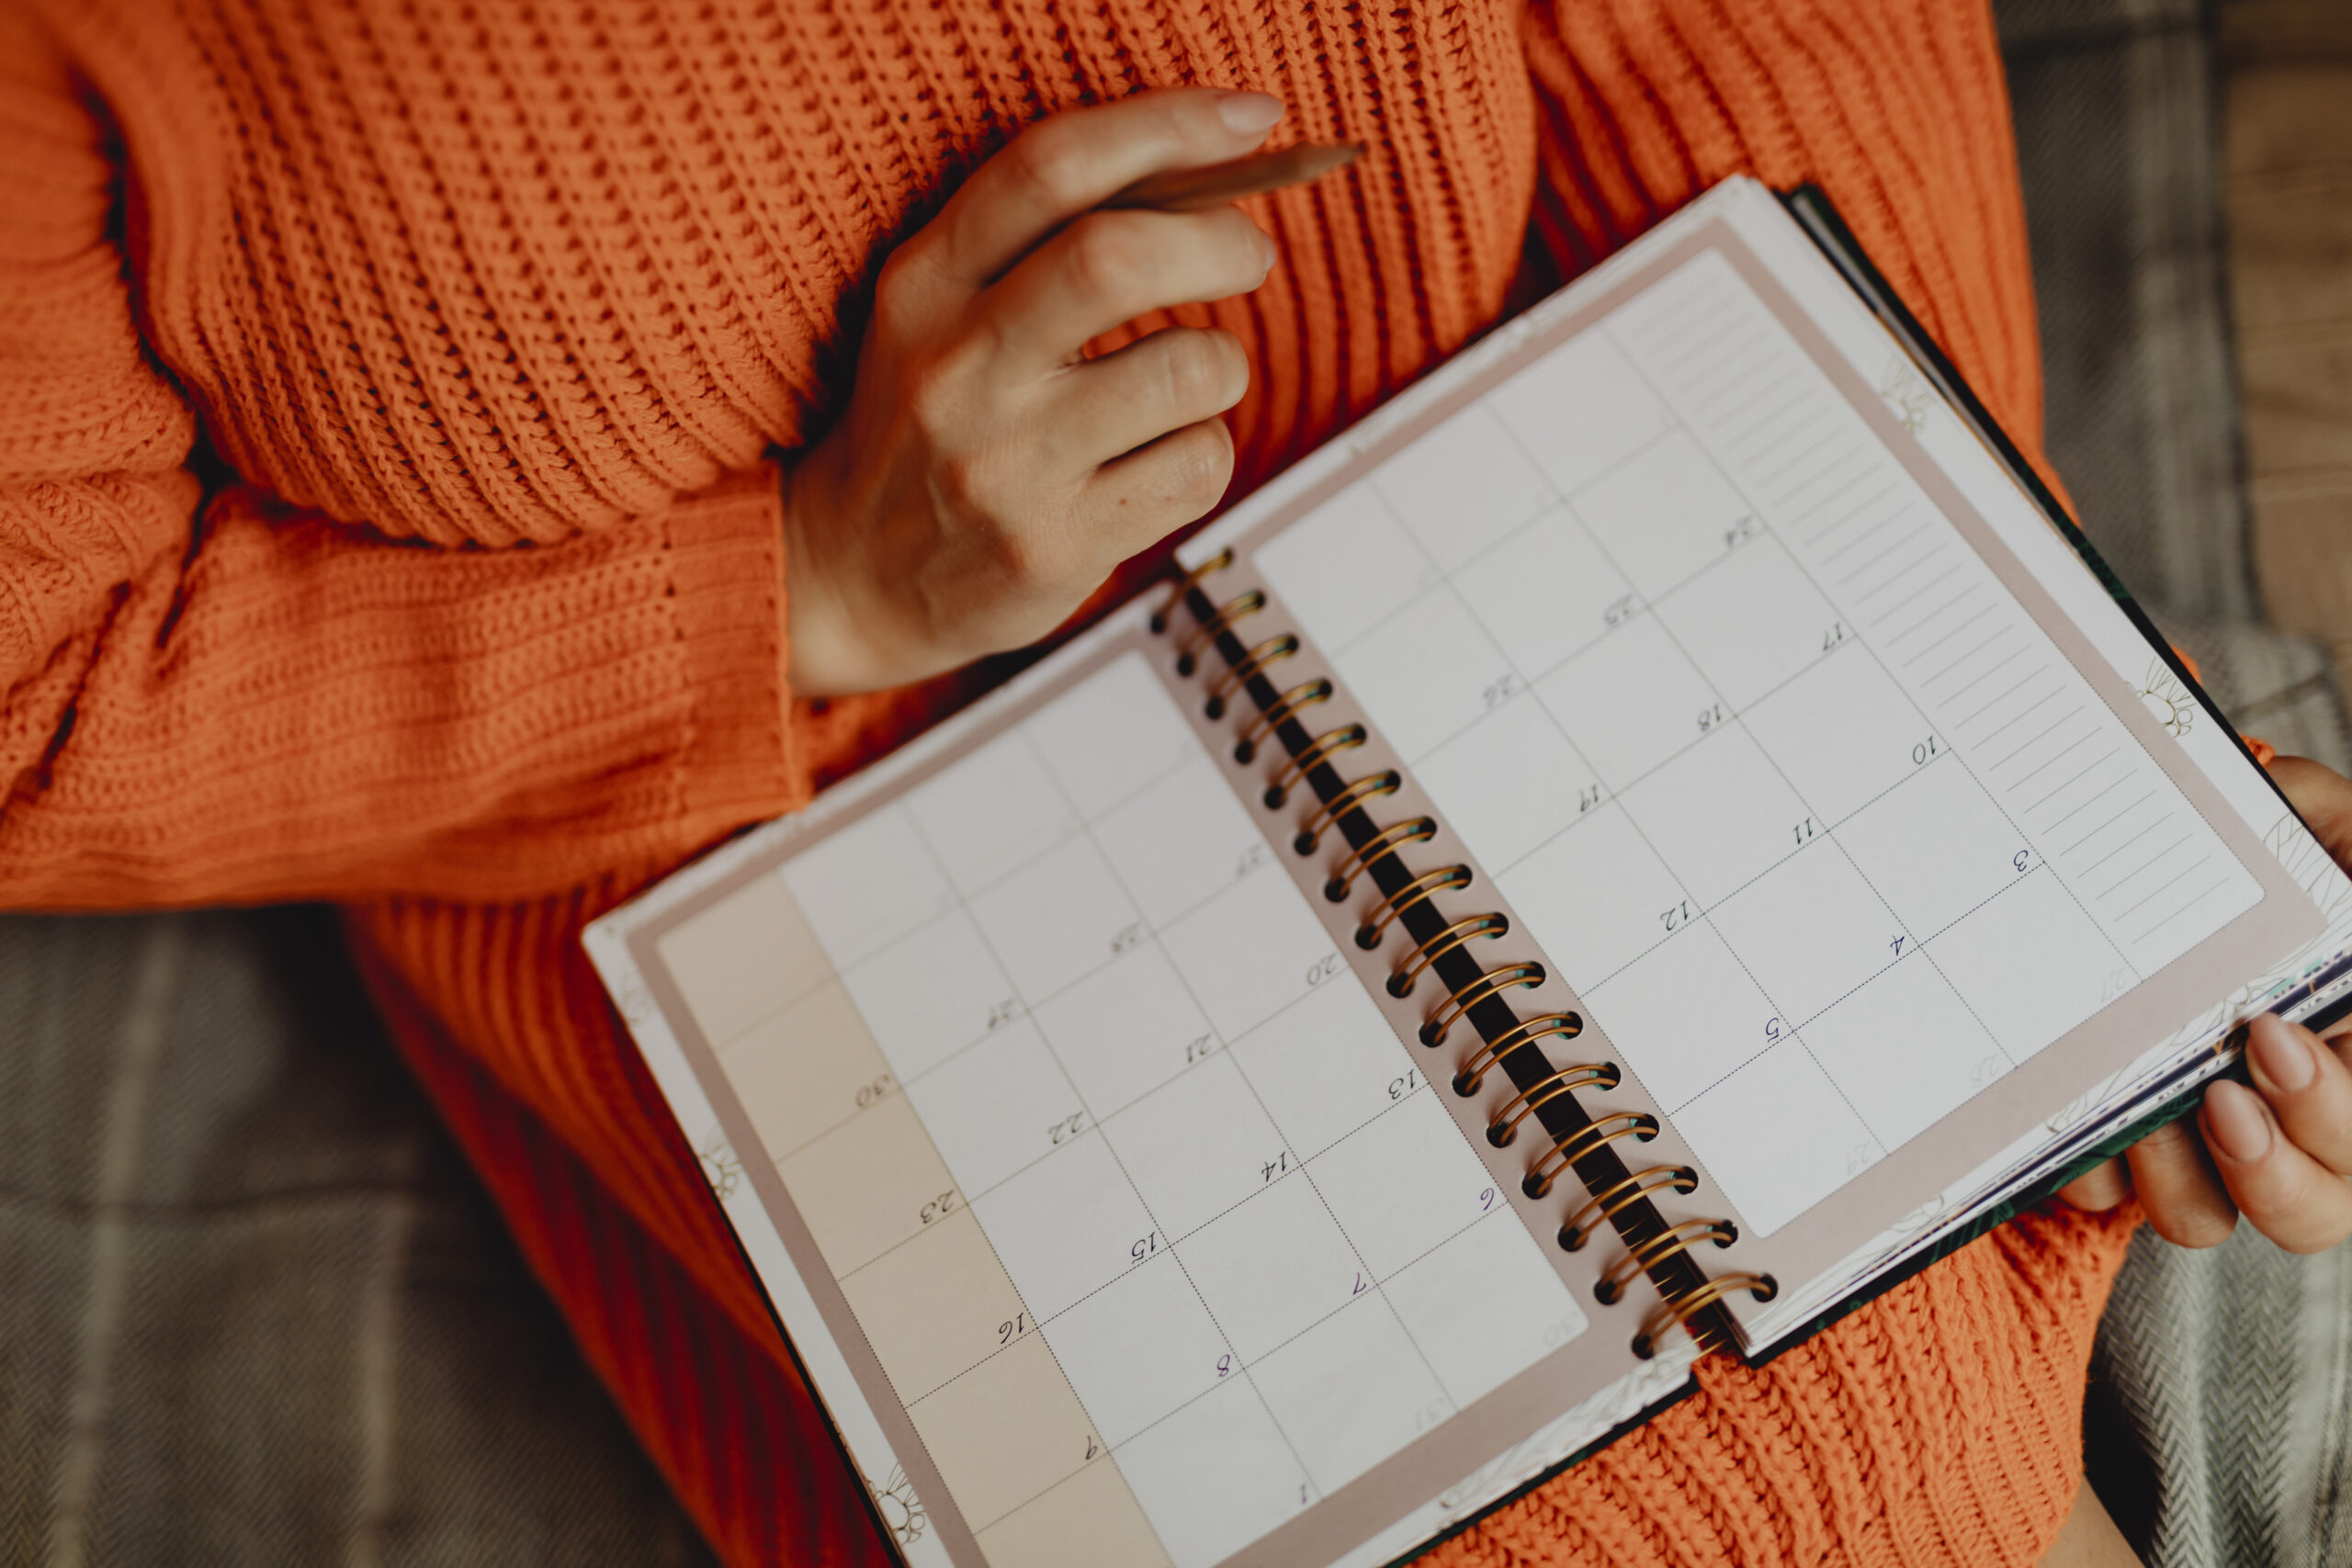 Pessoa com suéter laranja segurando um lápis e uma agenda aberta no calendário. O foco da imagem está na agenda